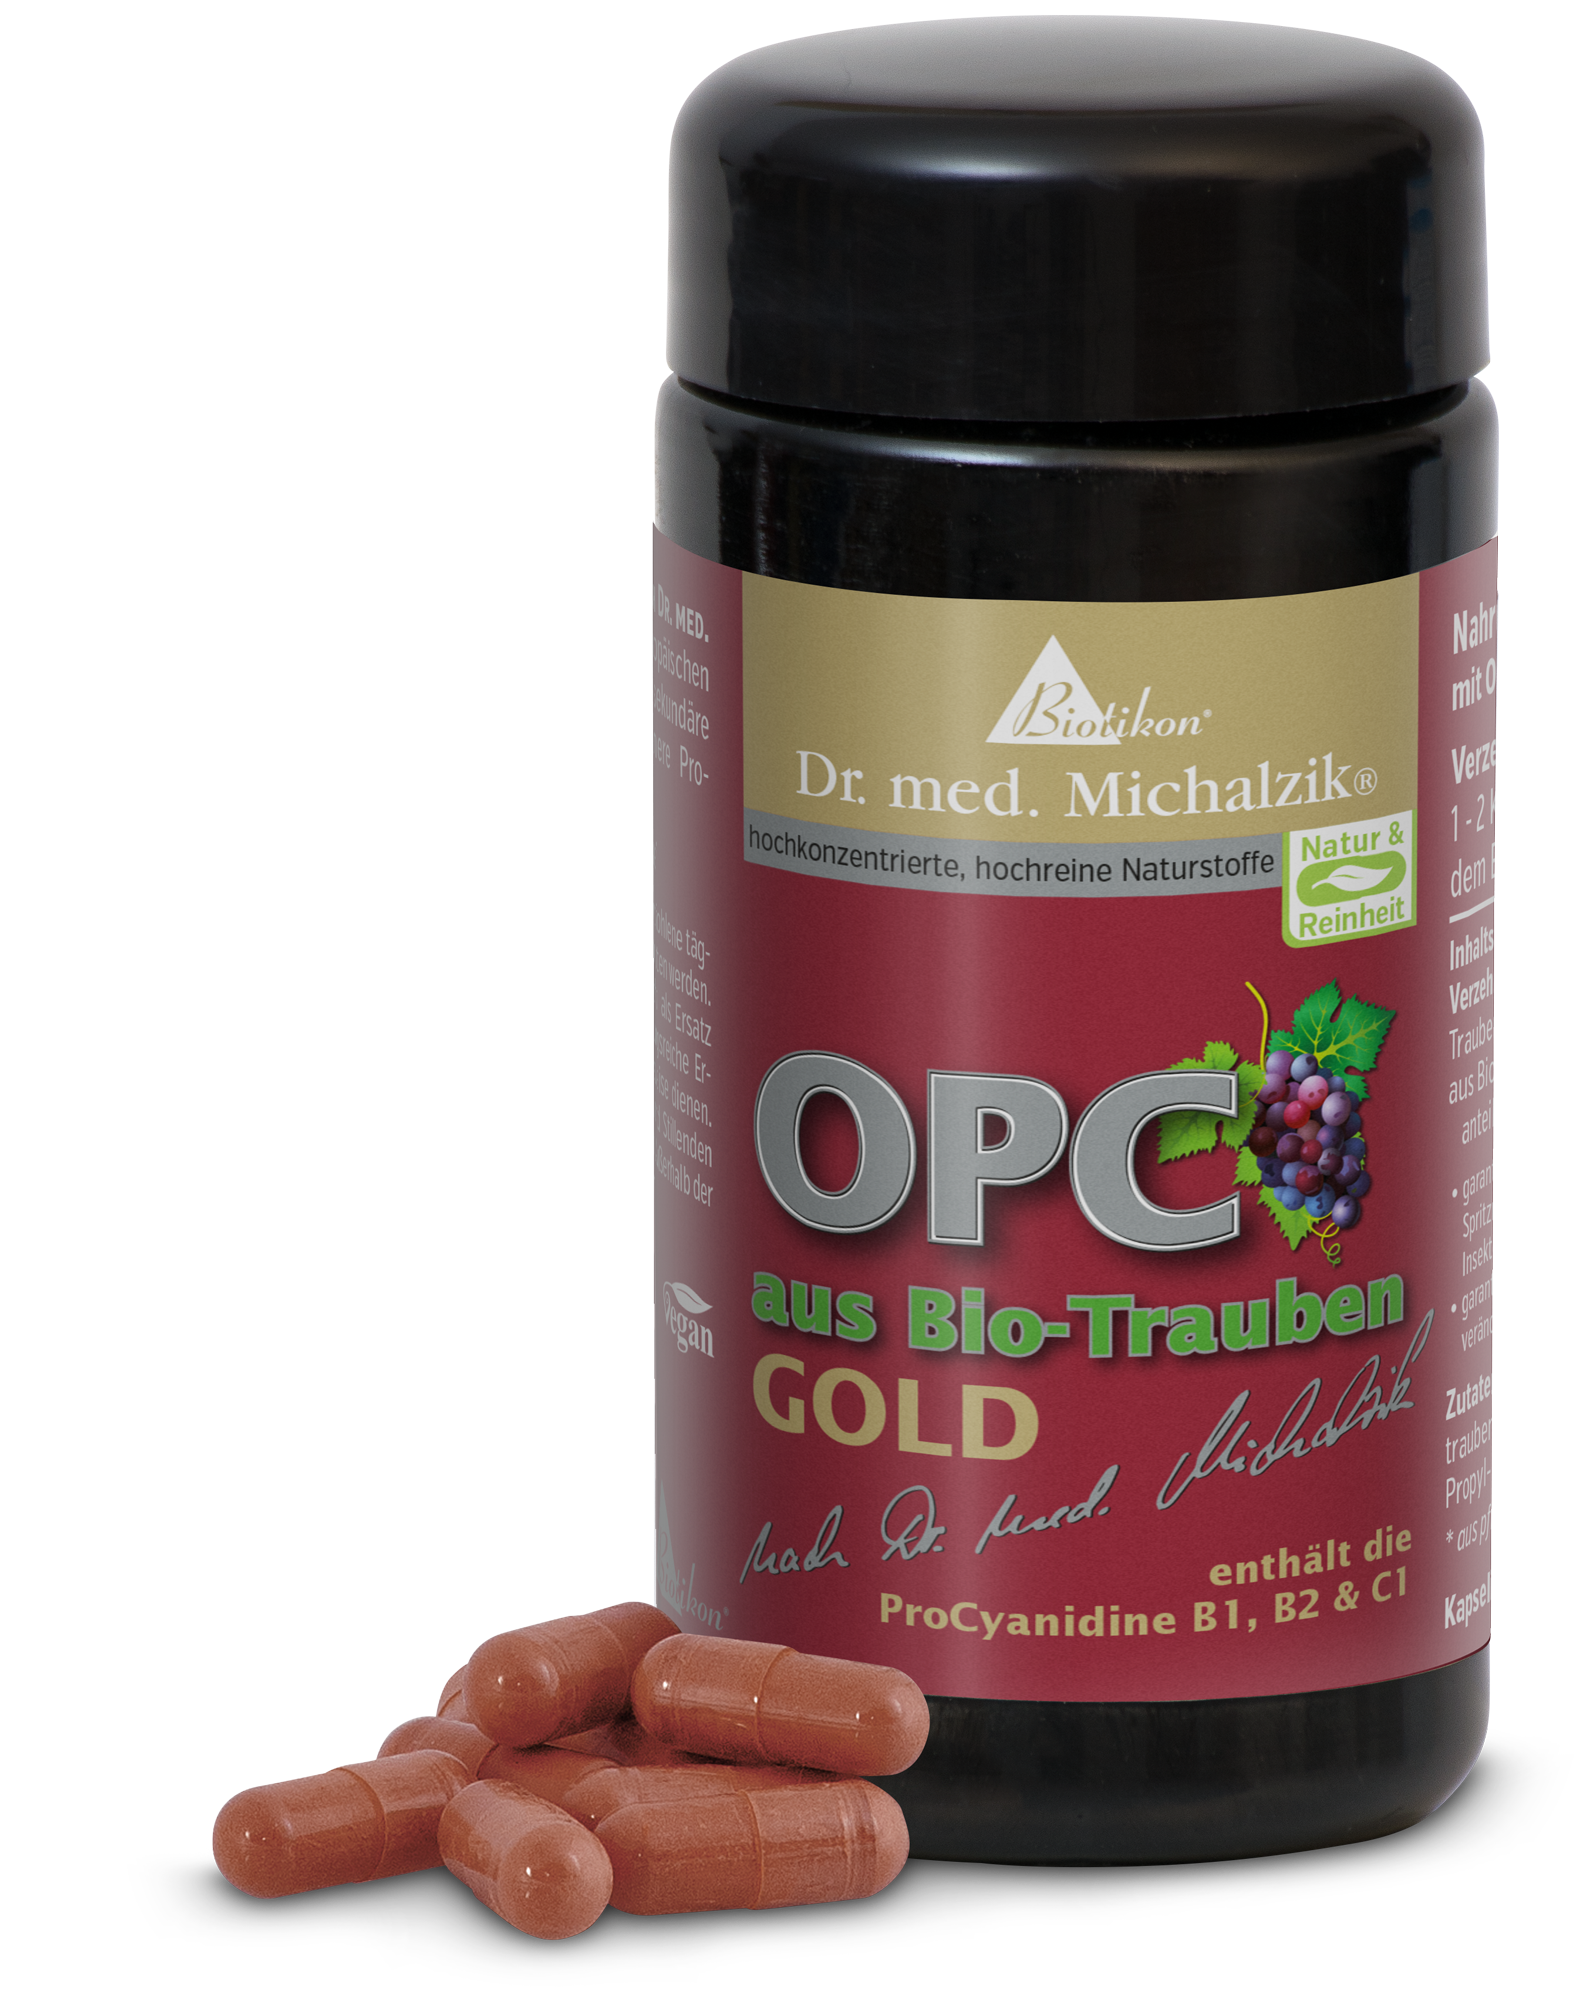 OPC aus Bio-Trauben GOLD